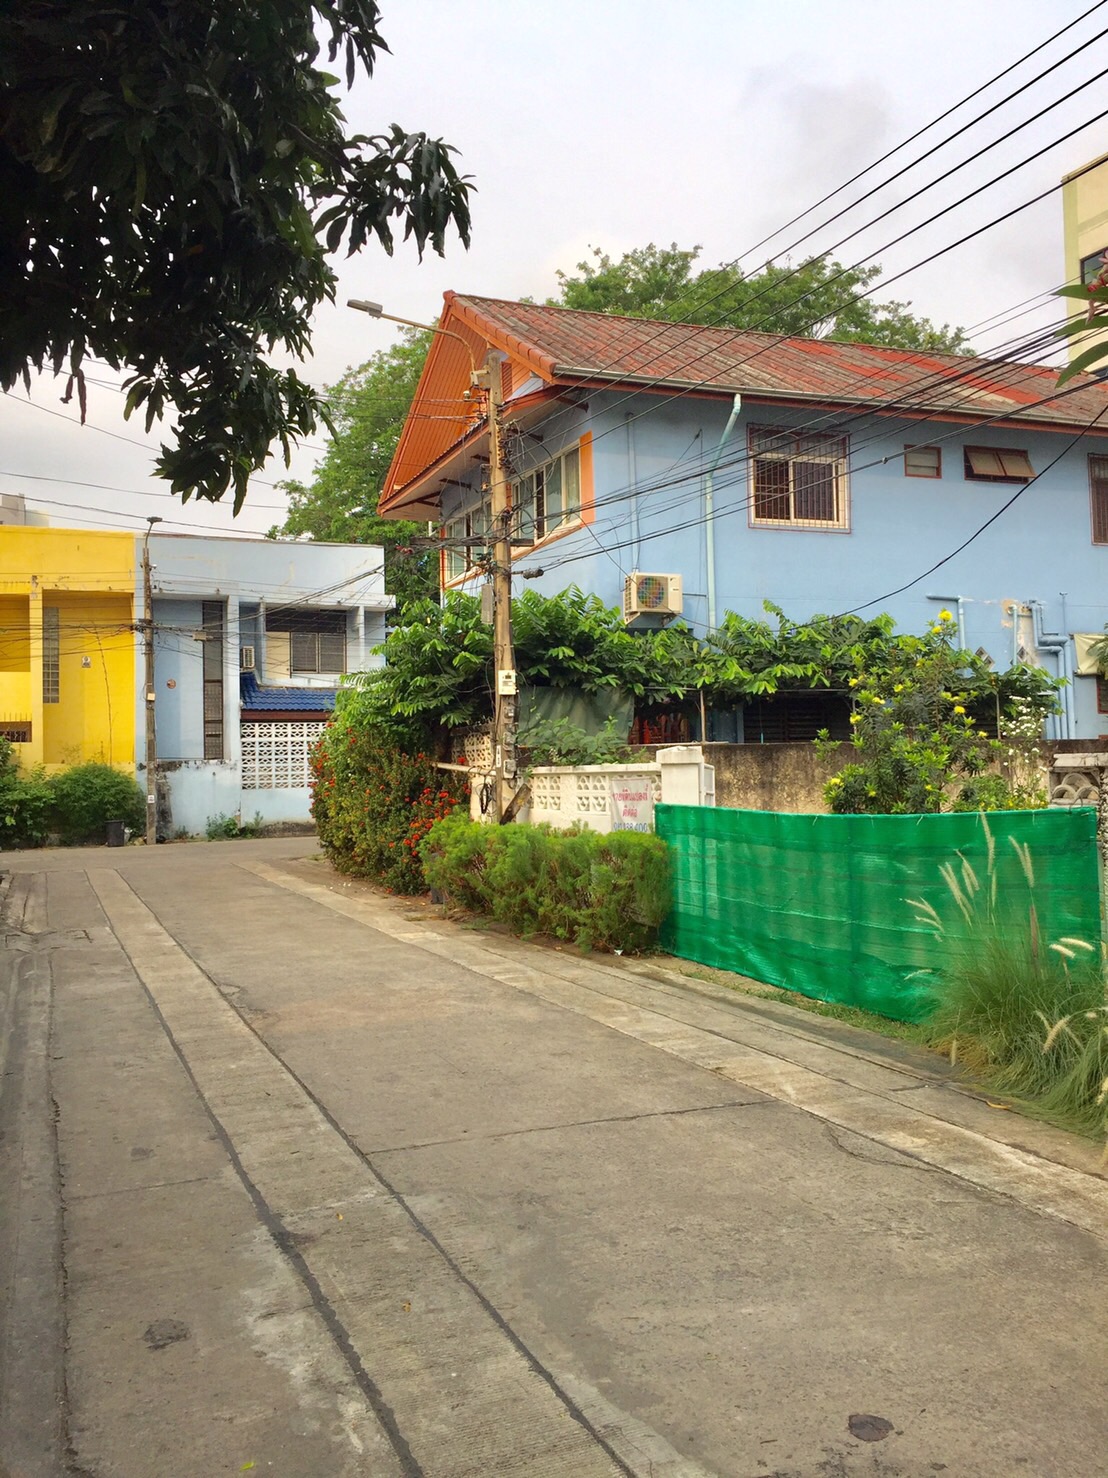 ขายที่ดินเปล่าพร้อมปลูกสร้าง ในหมู่บ้านซิเมนต์ไทย